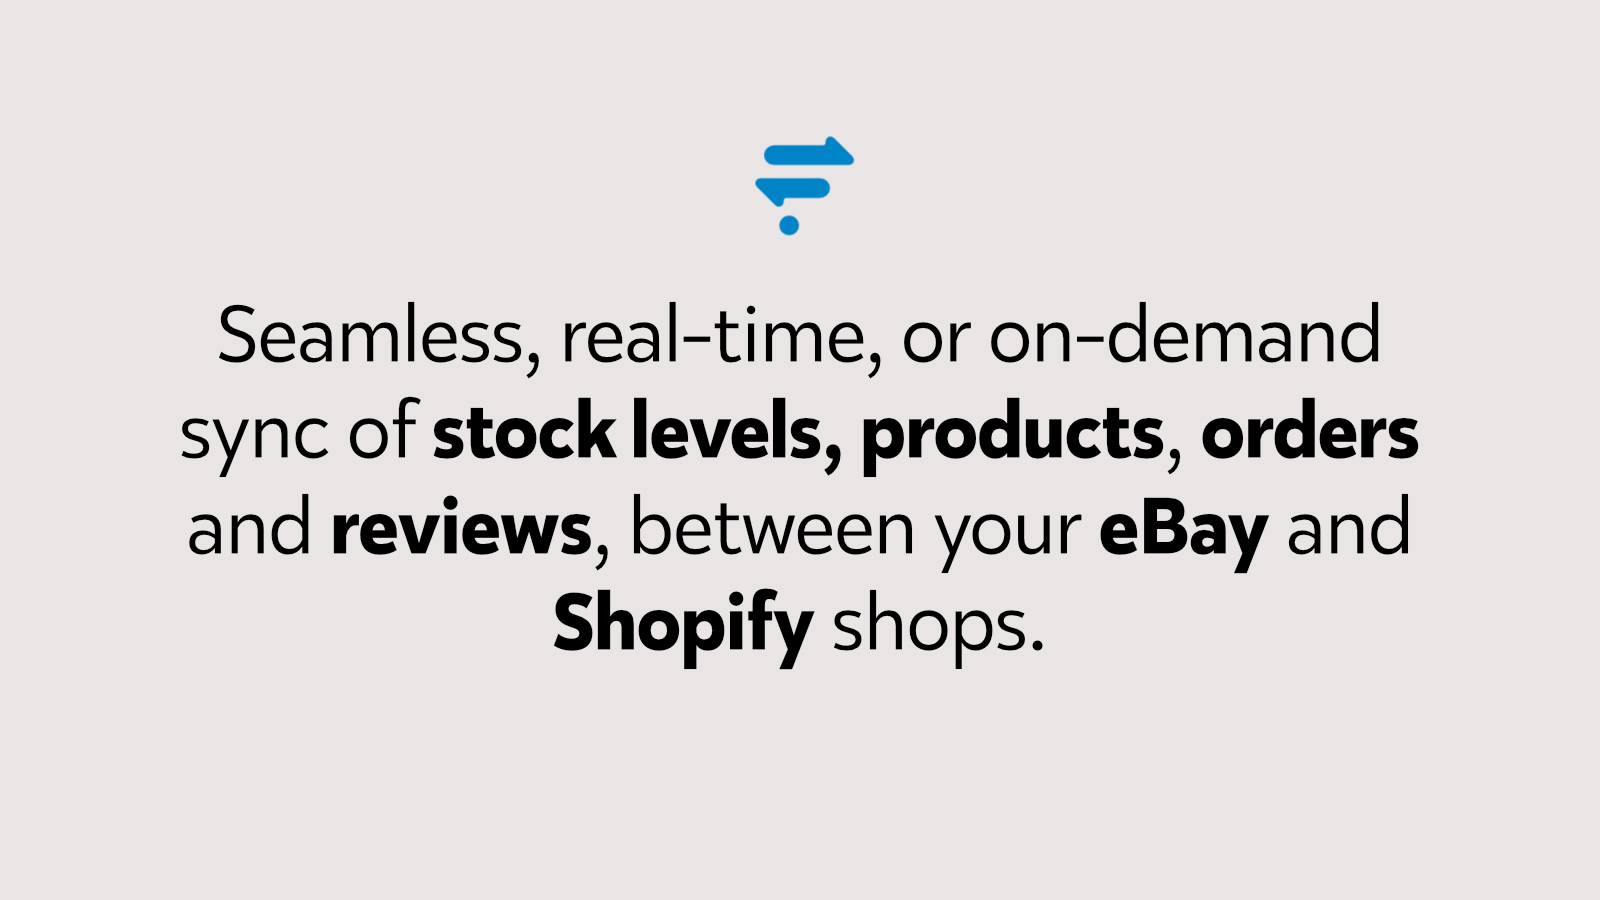 Sincronização completa em tempo real entre eBay e Shopify